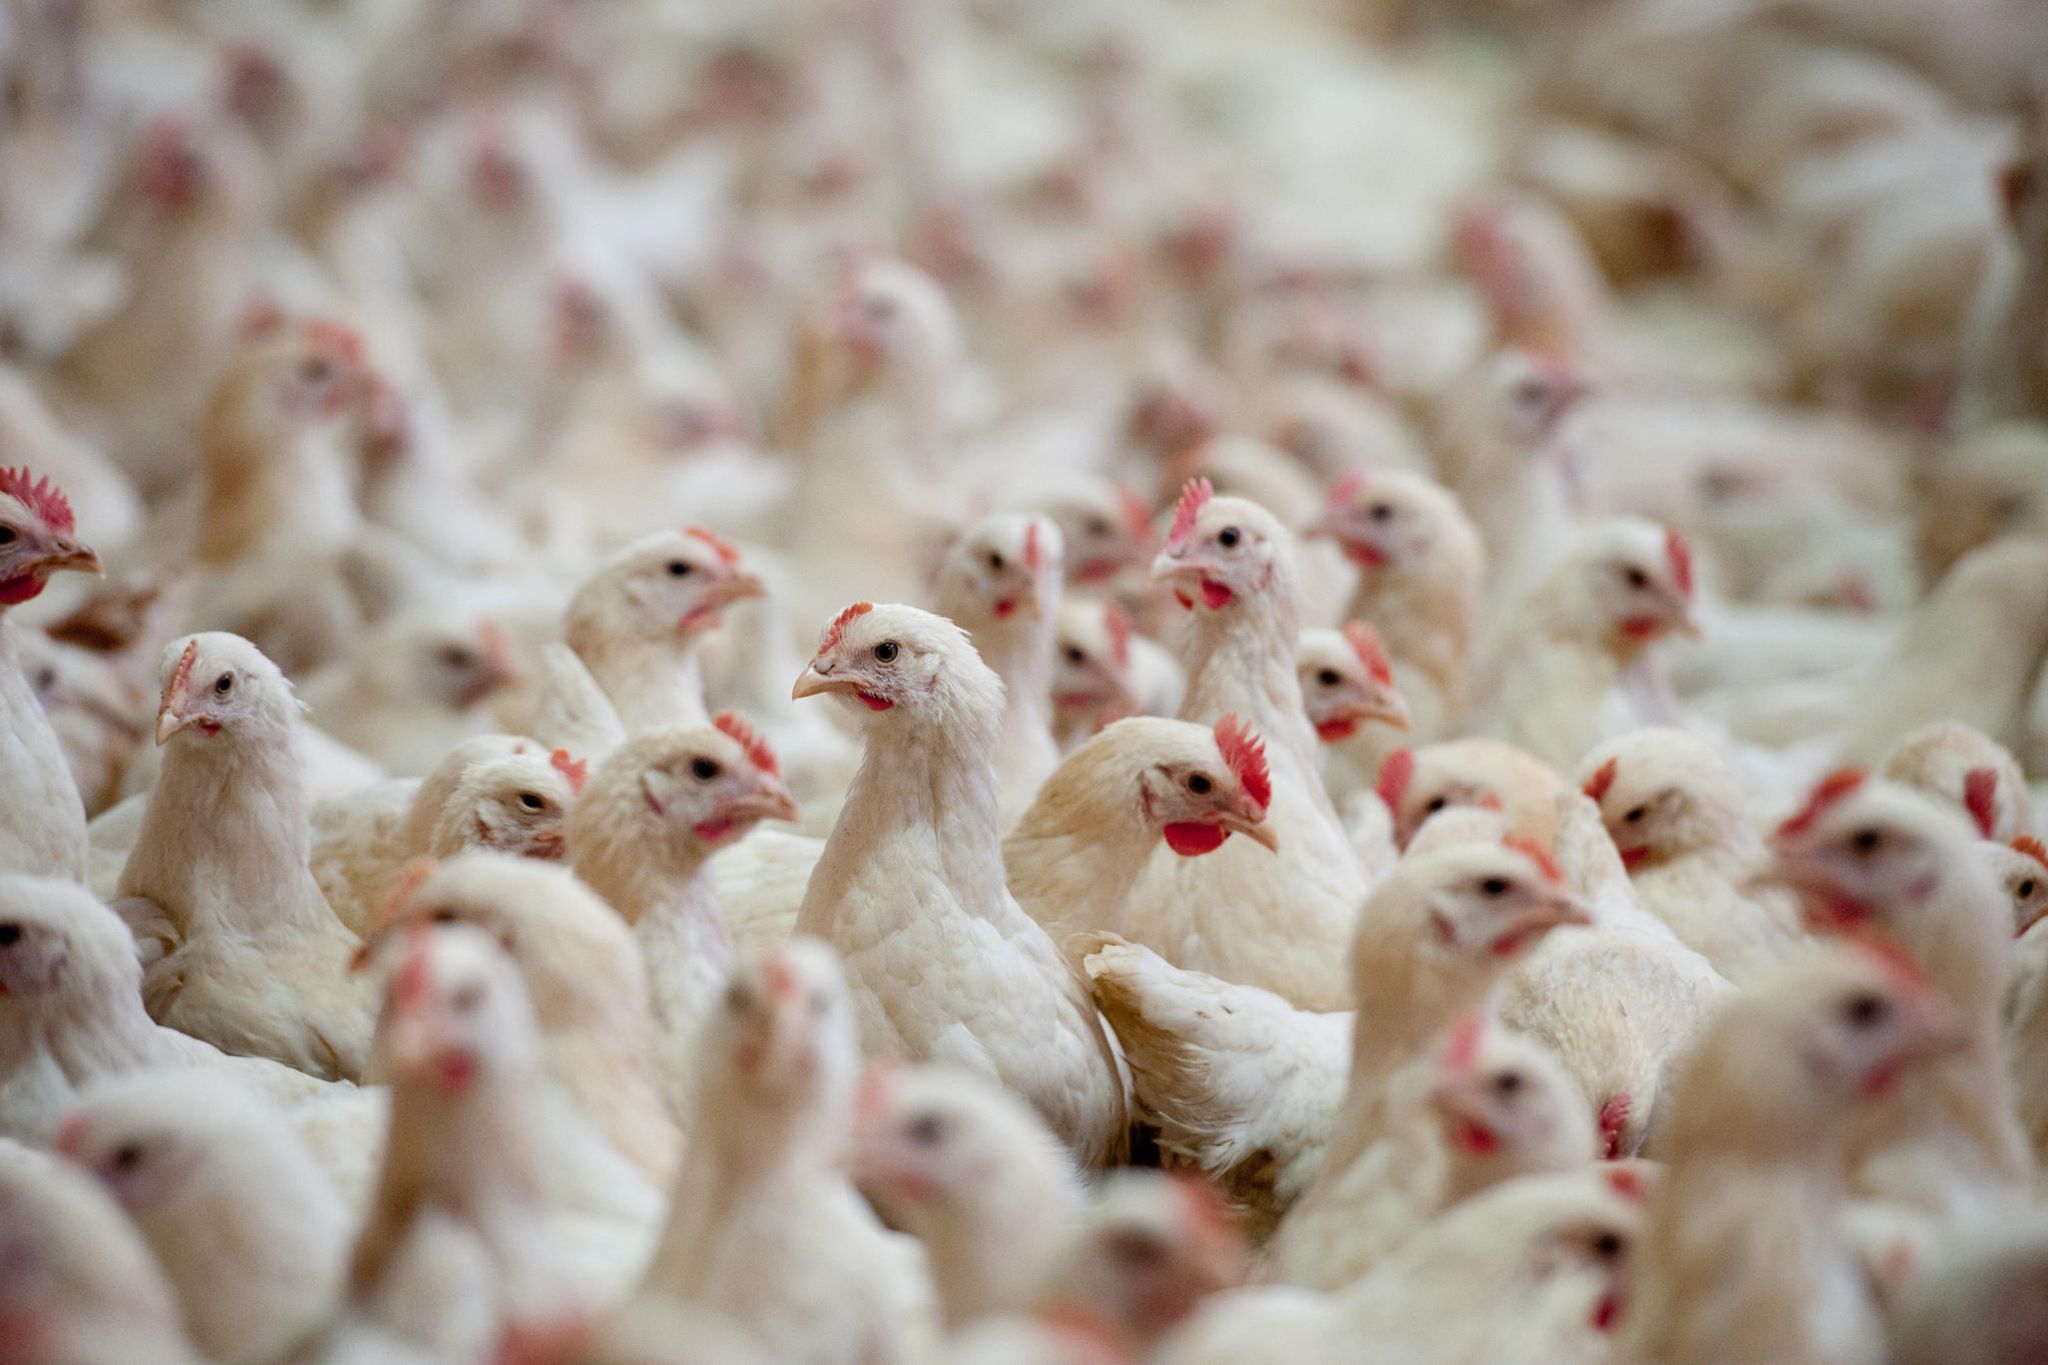 Landwirt aus Dielingen stattet sein Huhn mit Warnweste